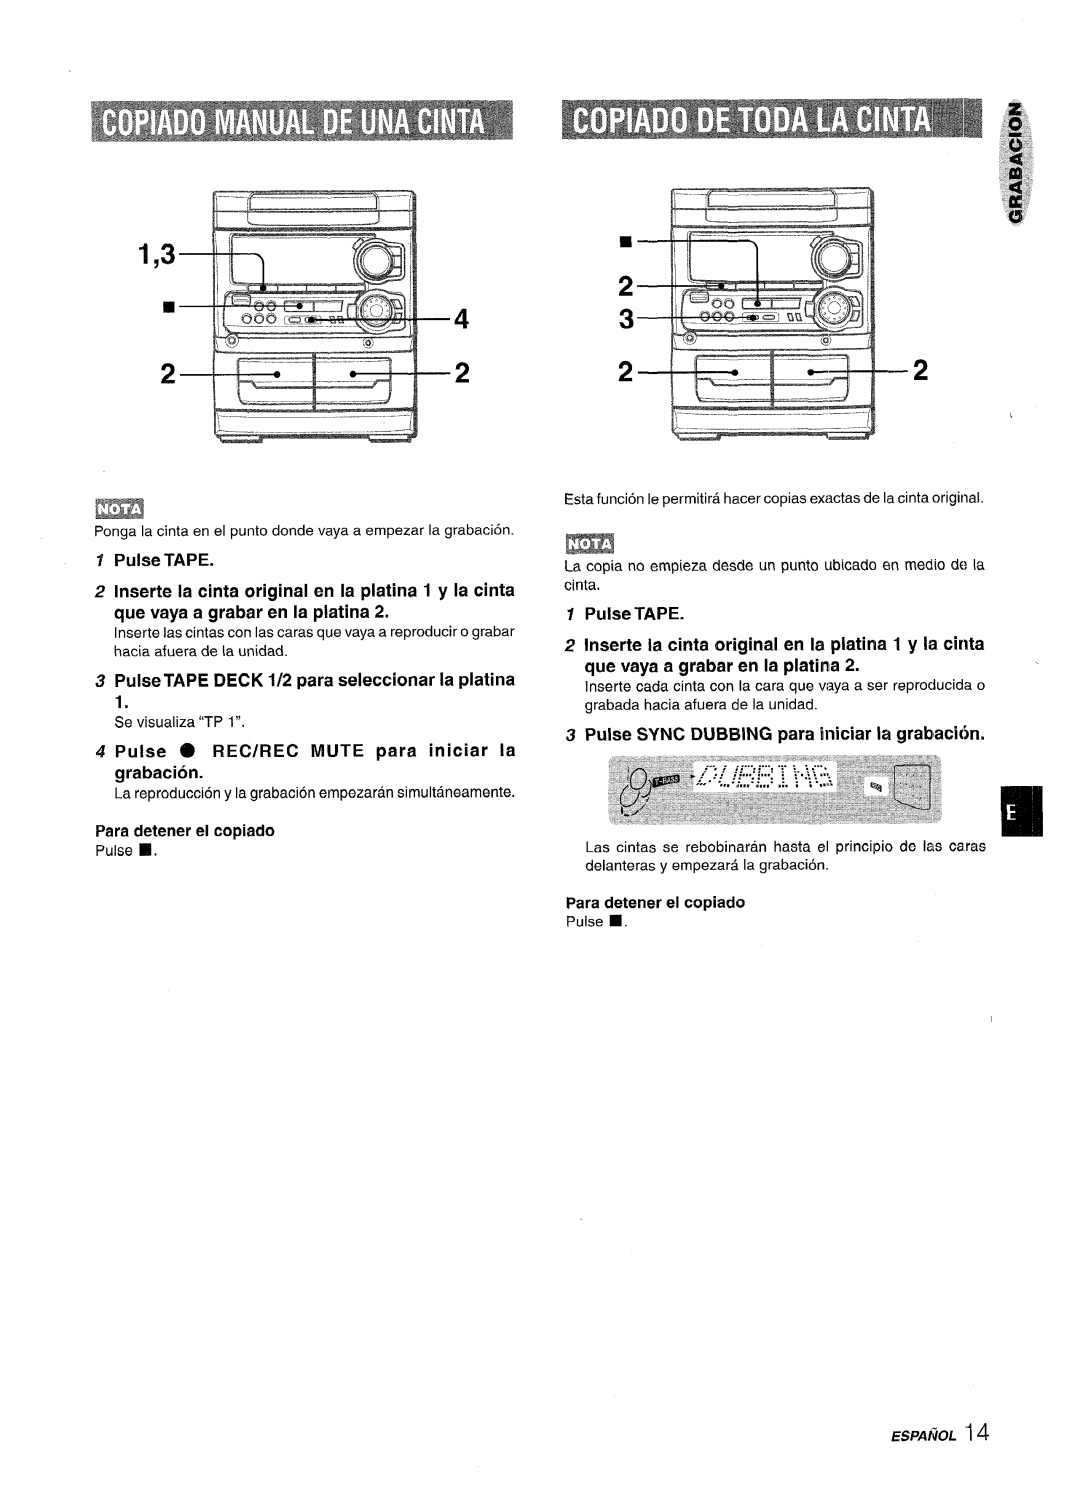 Sony SX-MT321 manual Pulse TAPE DECK 1/2 para seleccionar la platina, Pulse @ REC/REC MUTE para iniciar la grabacion 